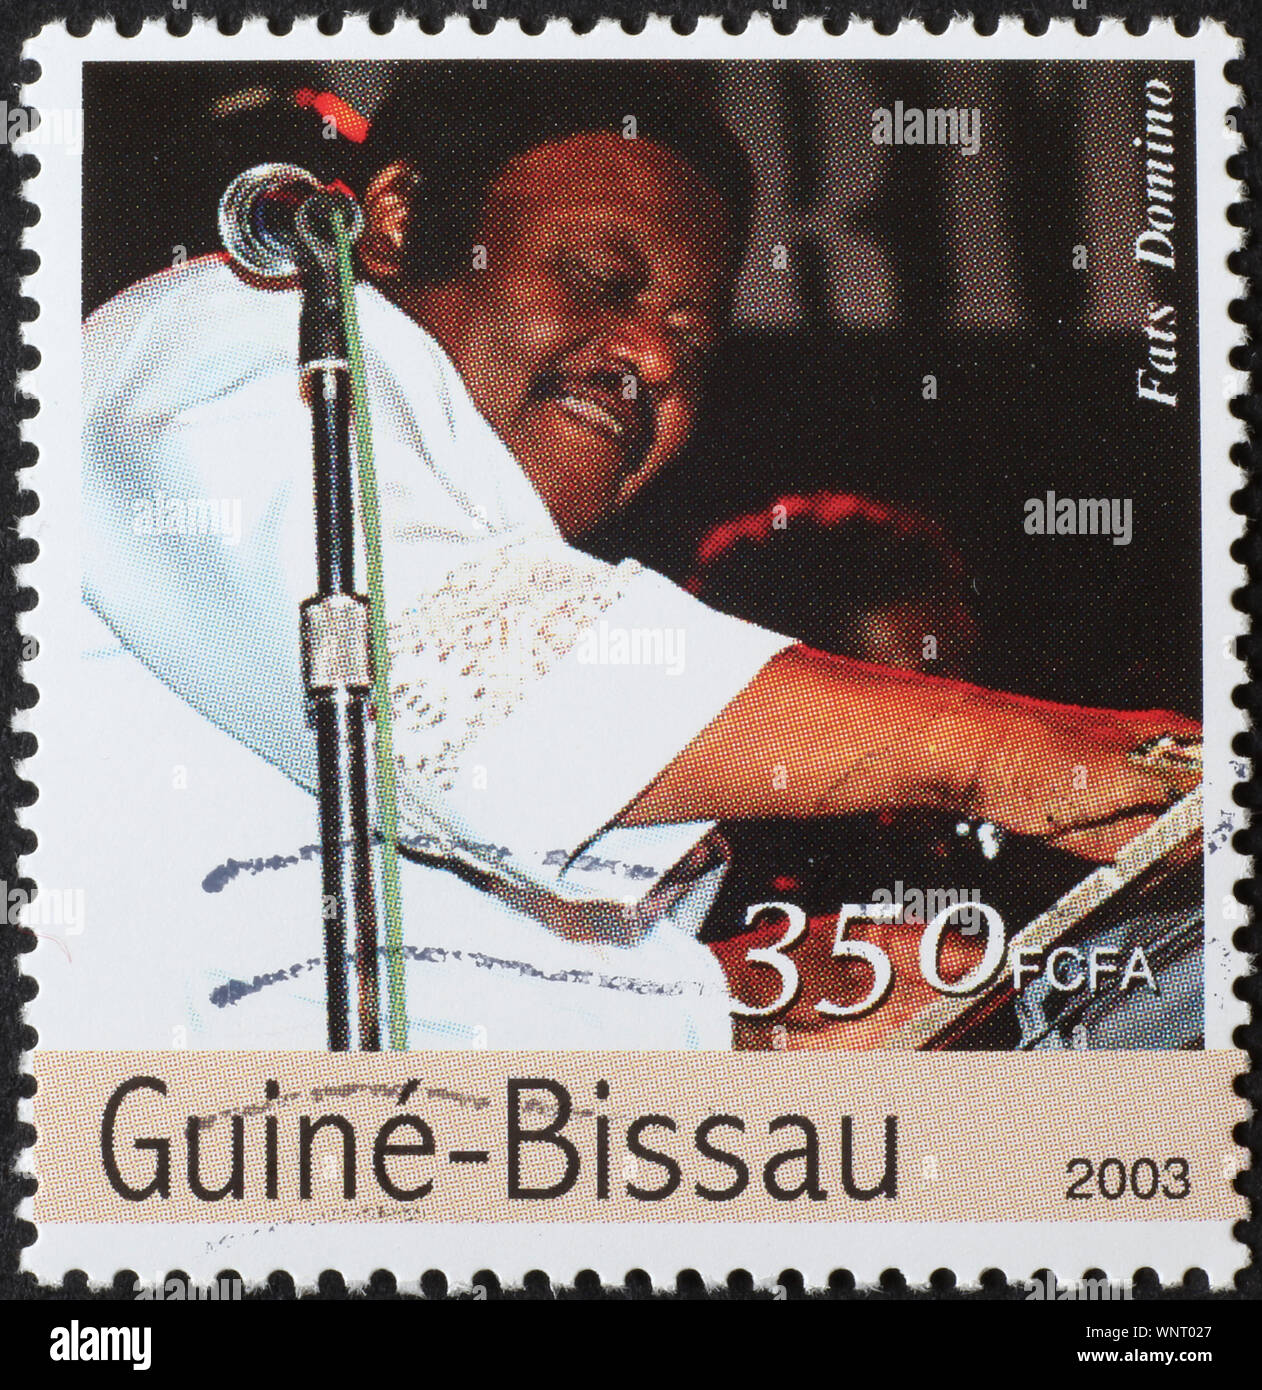 Fats Domino sur timbre-poste de la Guinée-Bissau Banque D'Images